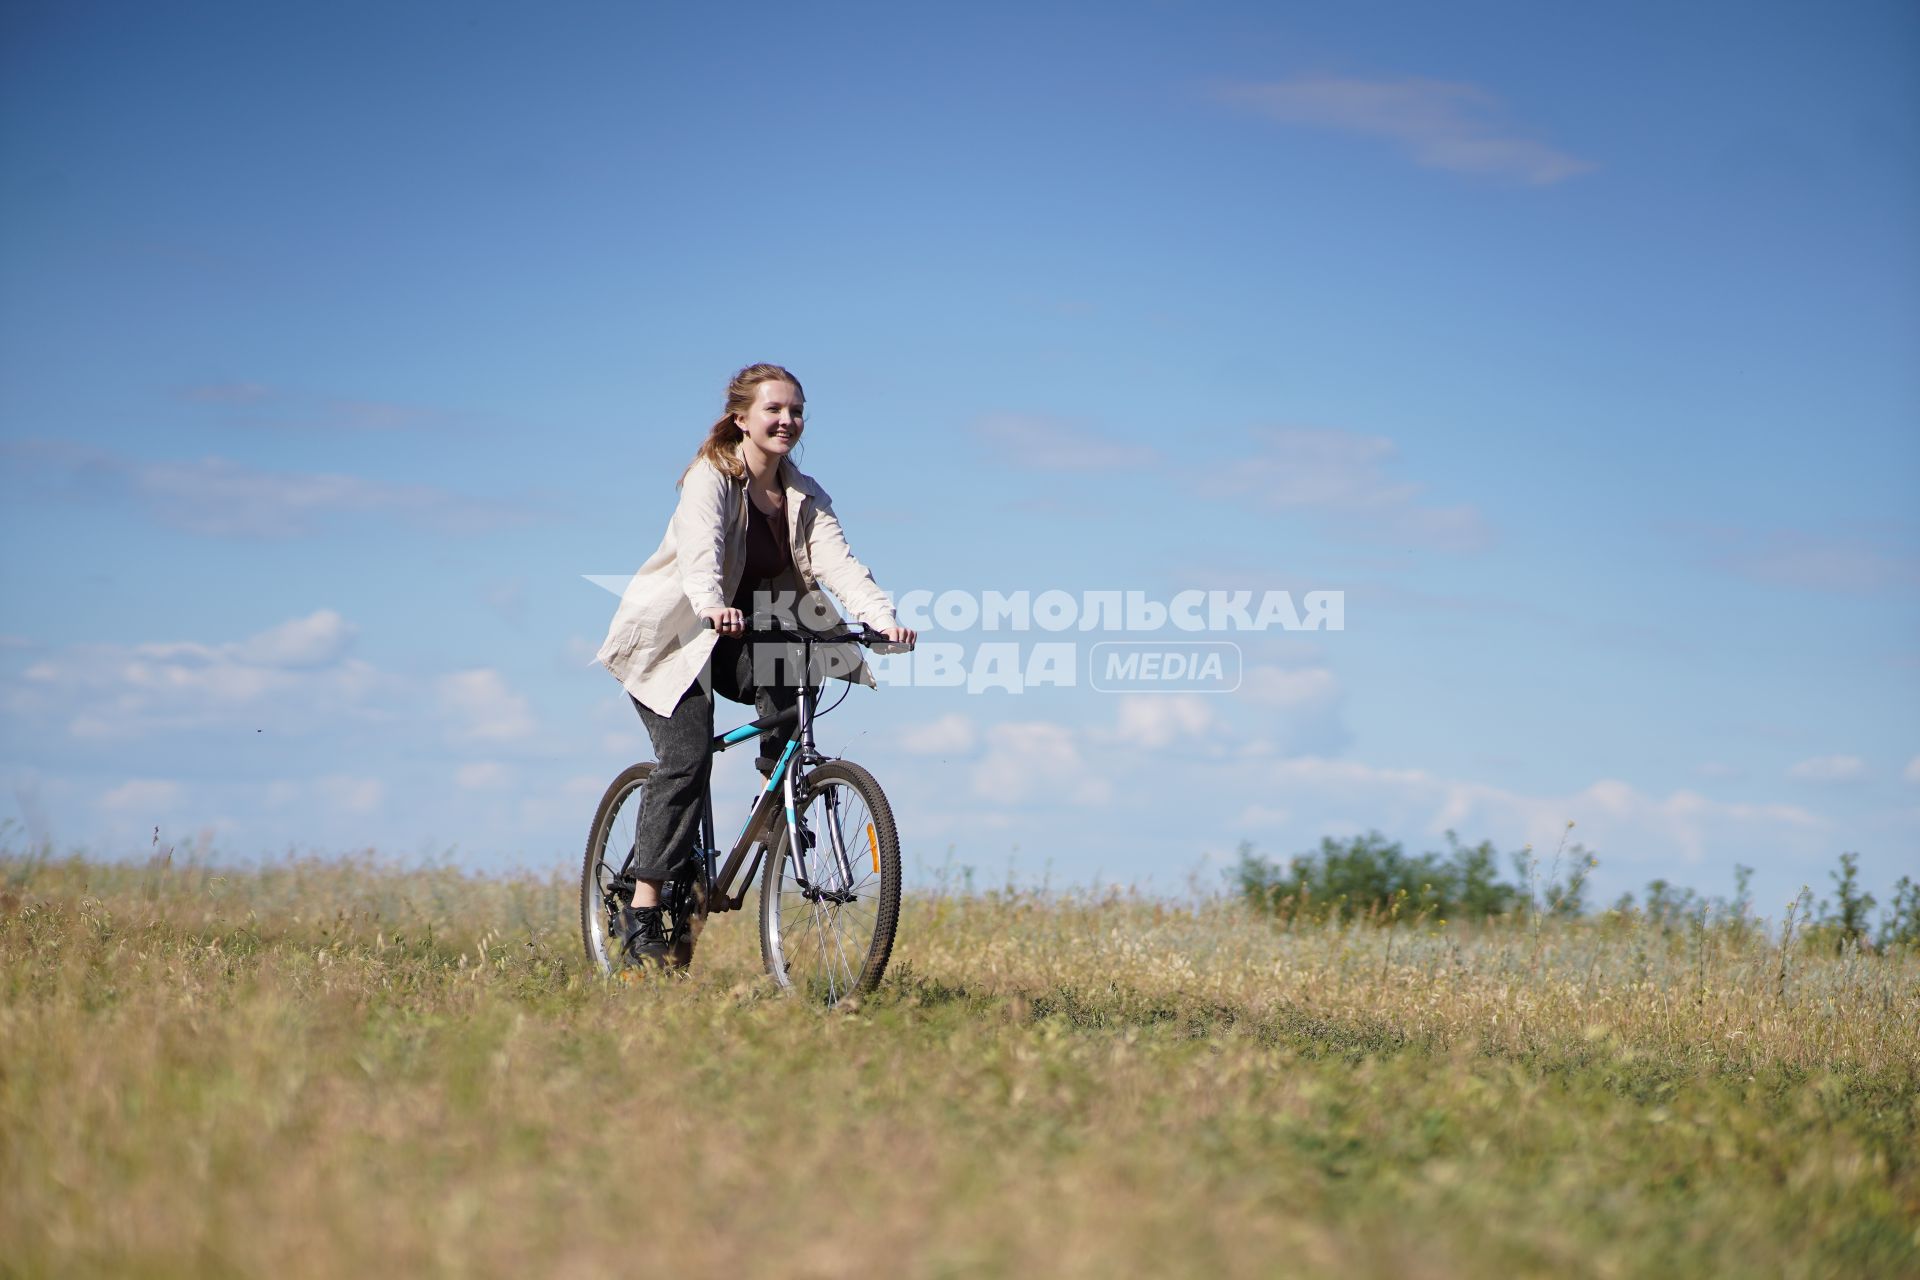 Самара. Девушка едет на велосипеде.